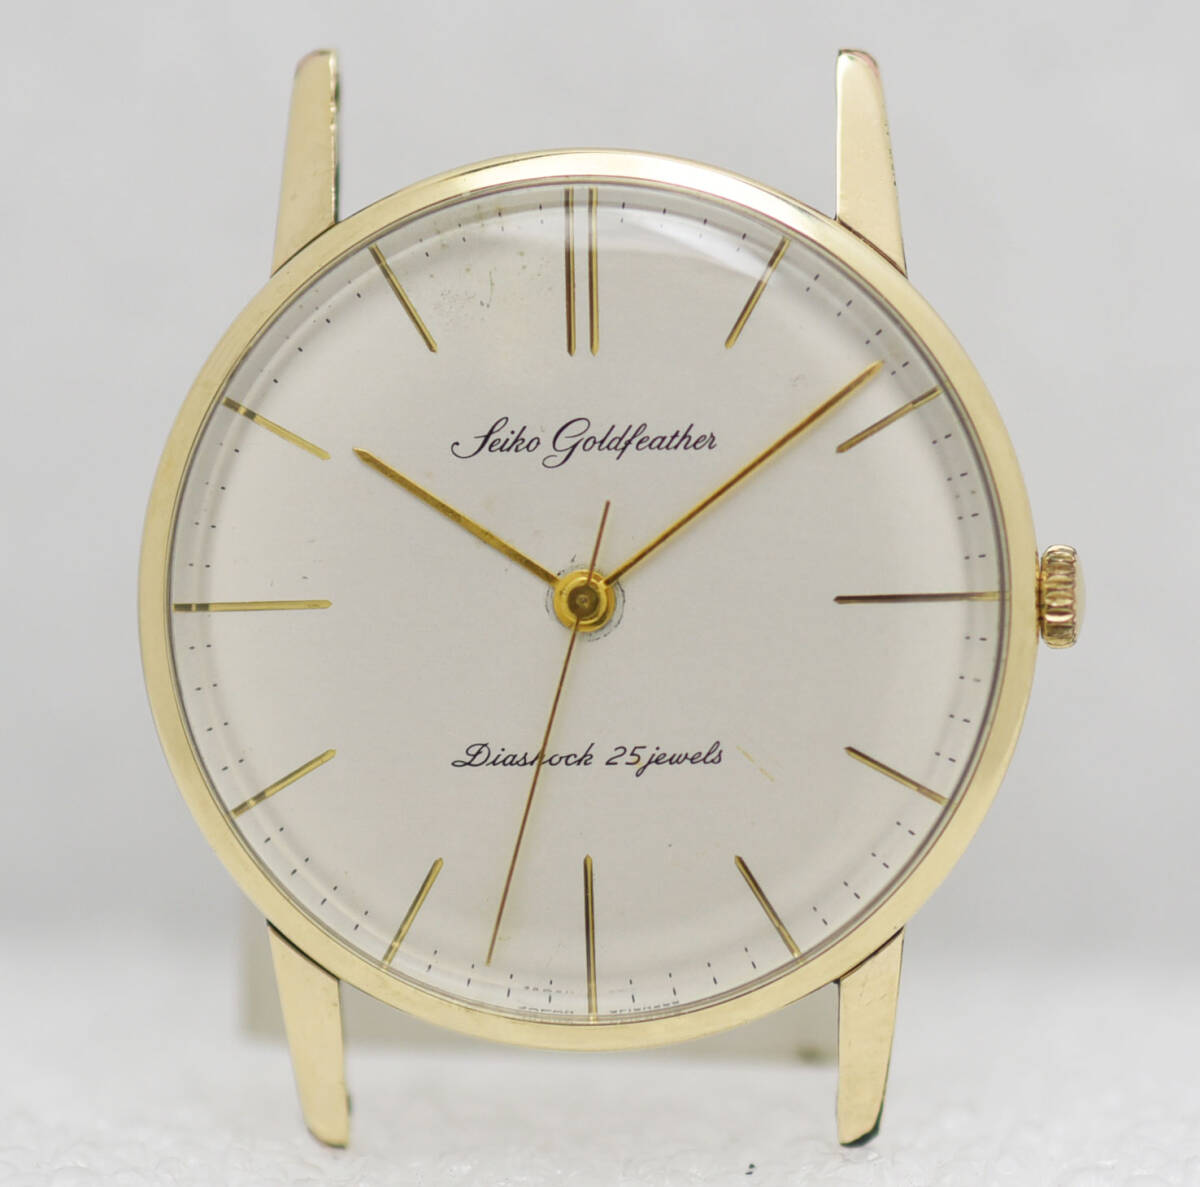 1960年 セイコー コールドフェザー 薄型高級品 25石 ビンテージ 手巻き 腕時計の画像1